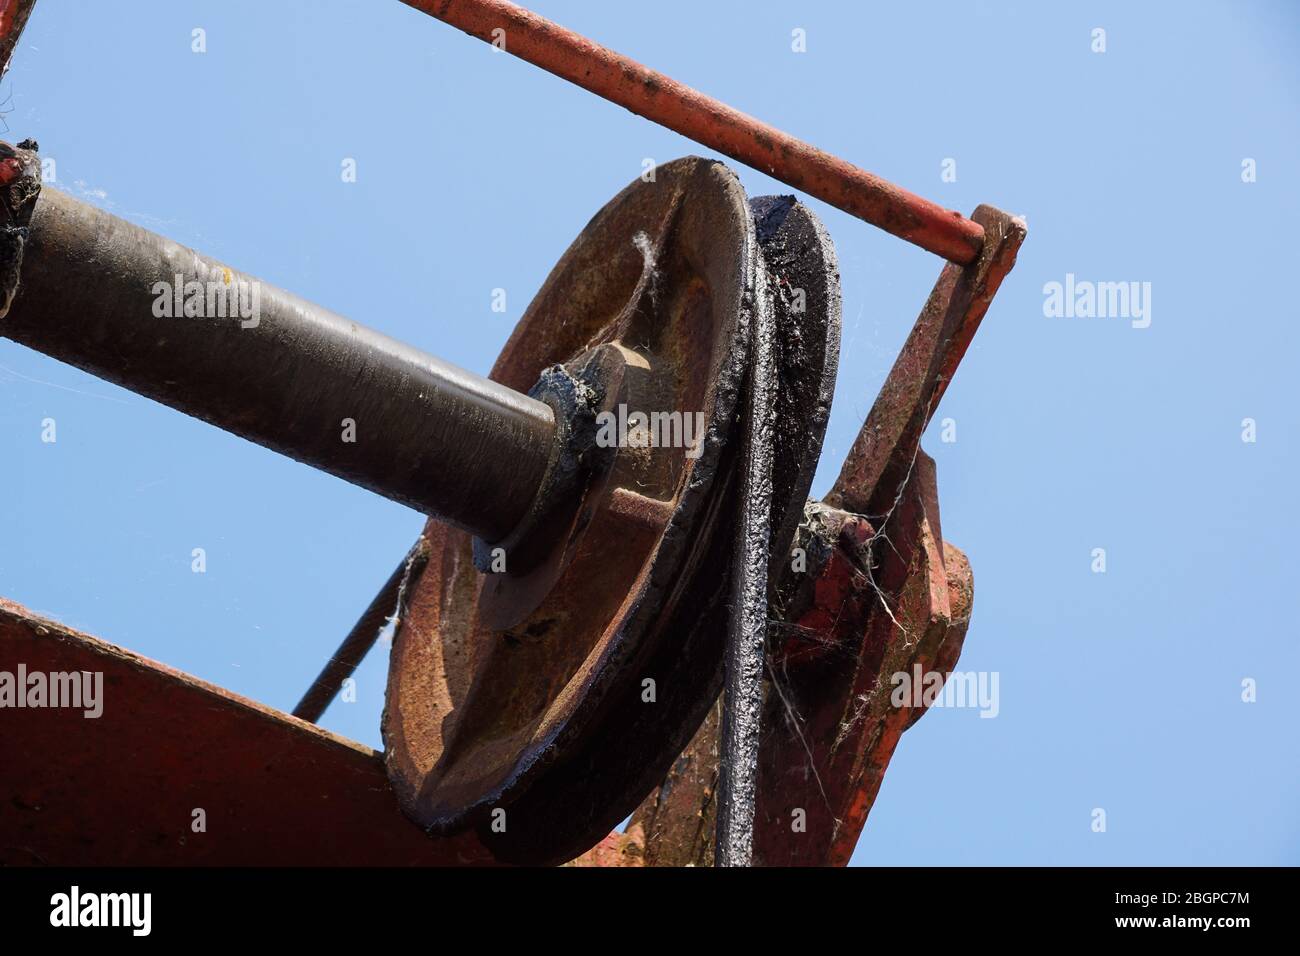 Drahtseil Schlinge oder Kabel Schlinge auf dem Kran Haspel drum oder Winde Rolle der Kran das Anheben der Maschine in der Schwerindustrie Stockfoto